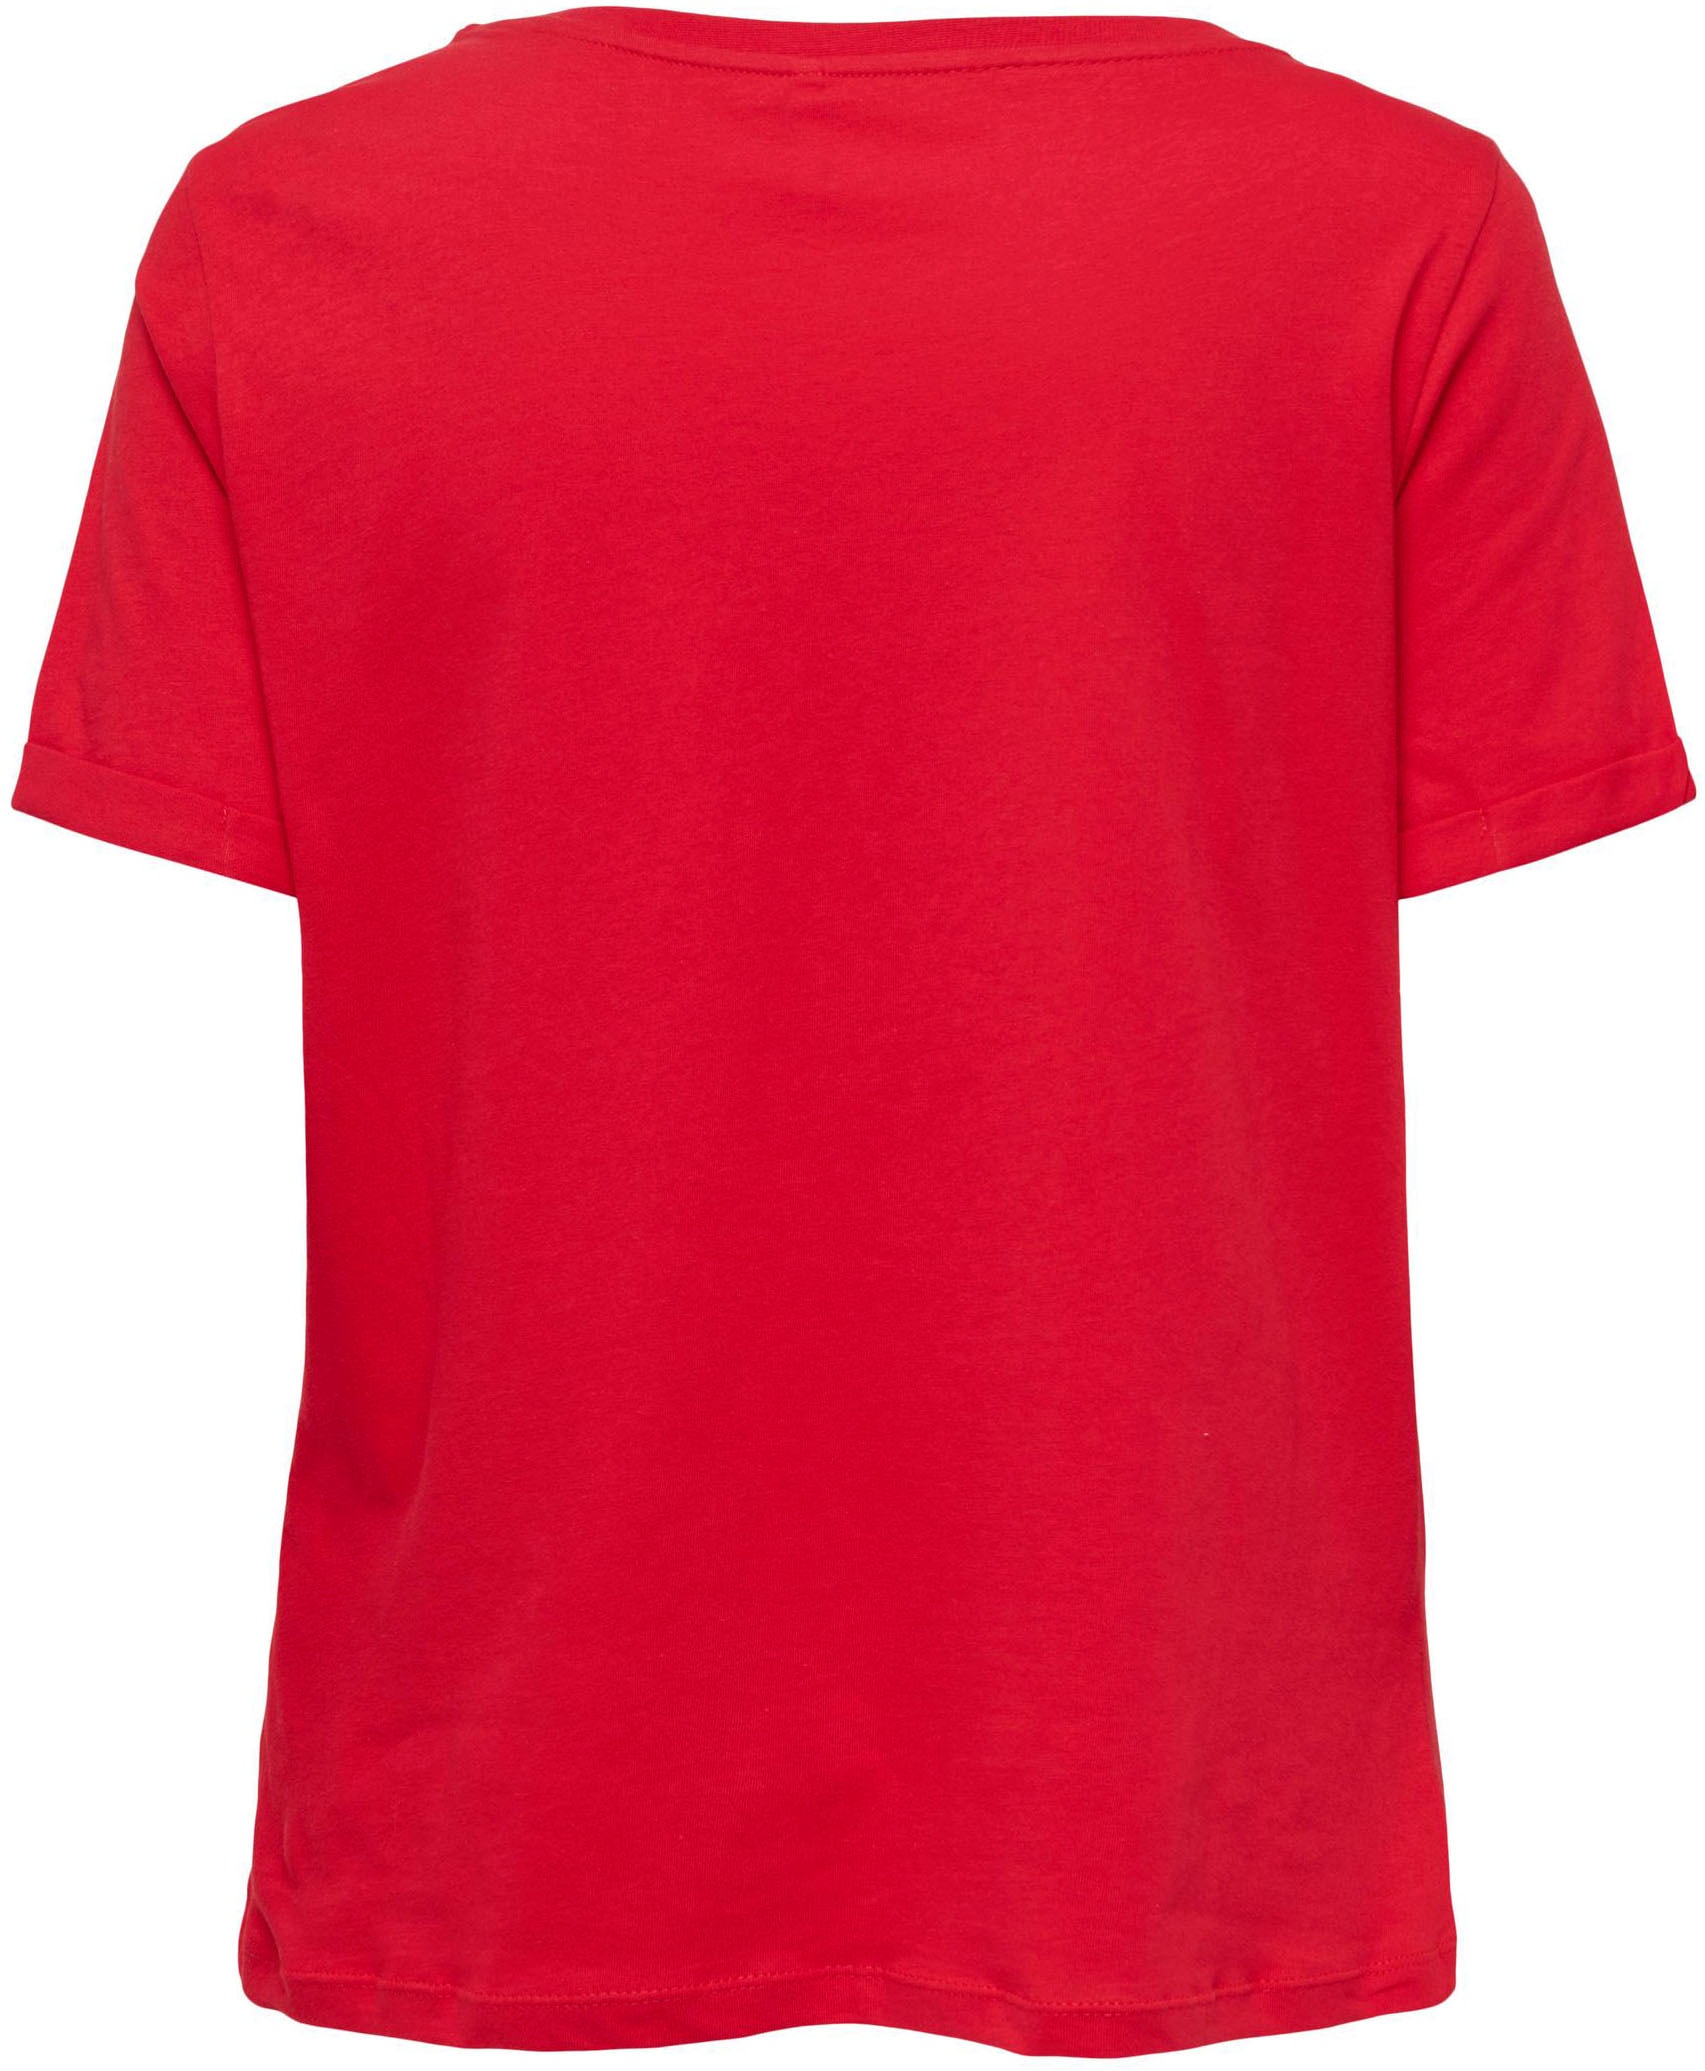 TOP NOOS« T-Shirt OTTO kaufen »ONLKITA im ONLY Shop Online S/S LOGO